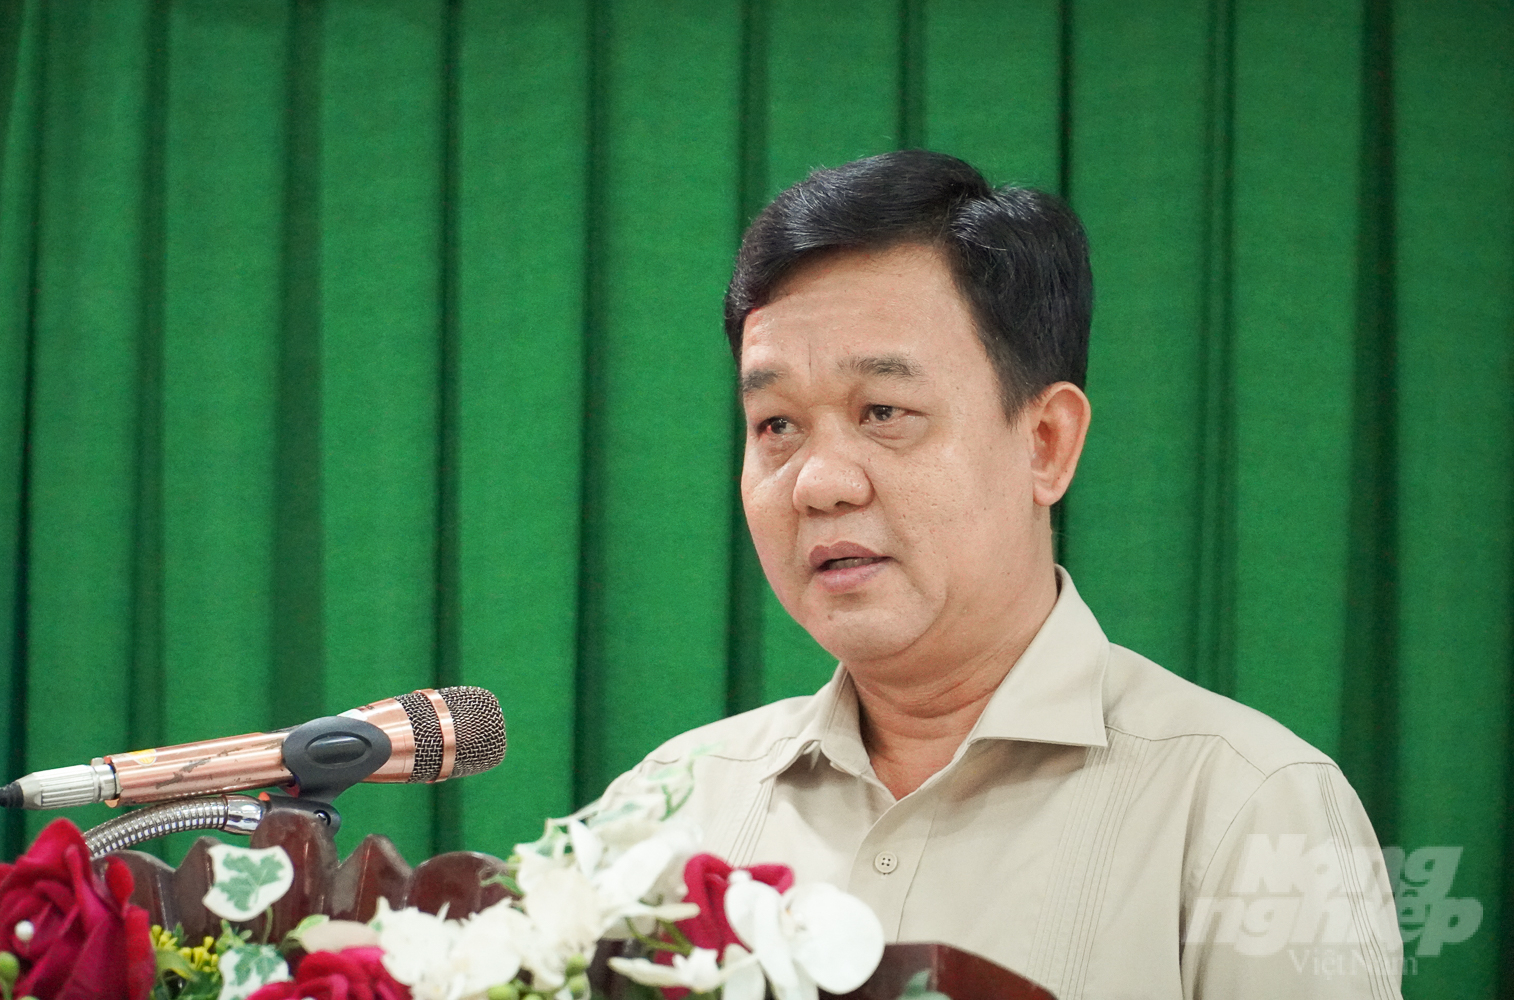 Ông Huỳnh Ngọc Nhã, Giám đốc Sở NN-PTNT tỉnh Sóc Trăng đánh giá cao vai trò của công tác thông tin, tuyên truyền. Ảnh: Kim Anh.